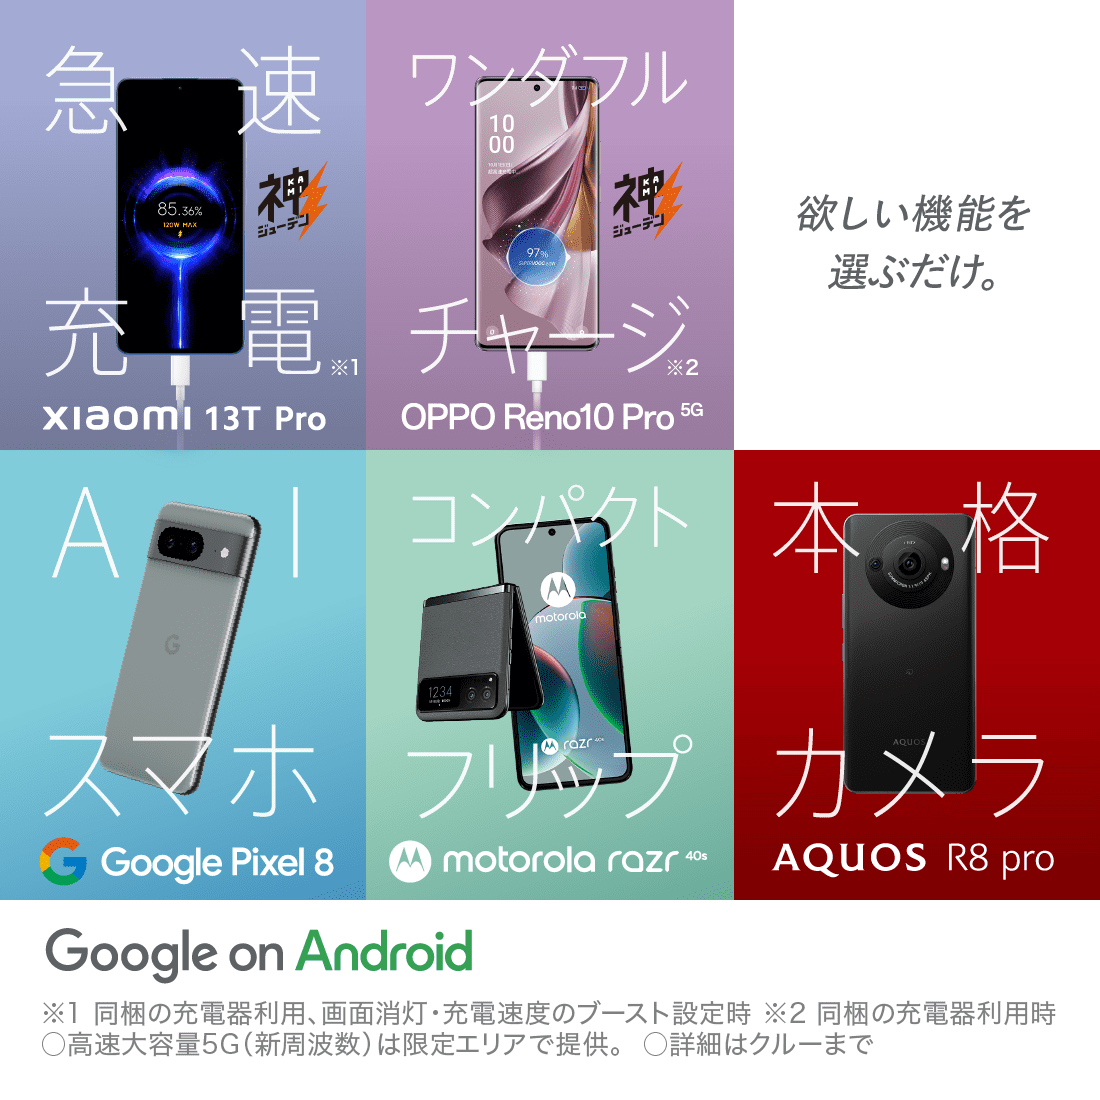 急速神充電XIAOMI 13T Pro ワンダフルチャージOPPO RENO10 Pro 5G 欲しい機能を選ぶだけ。 AIスマホ google pixel 8 コンパクトフリップmotorola razr 本格カメラ Aquos R8pro Google on android